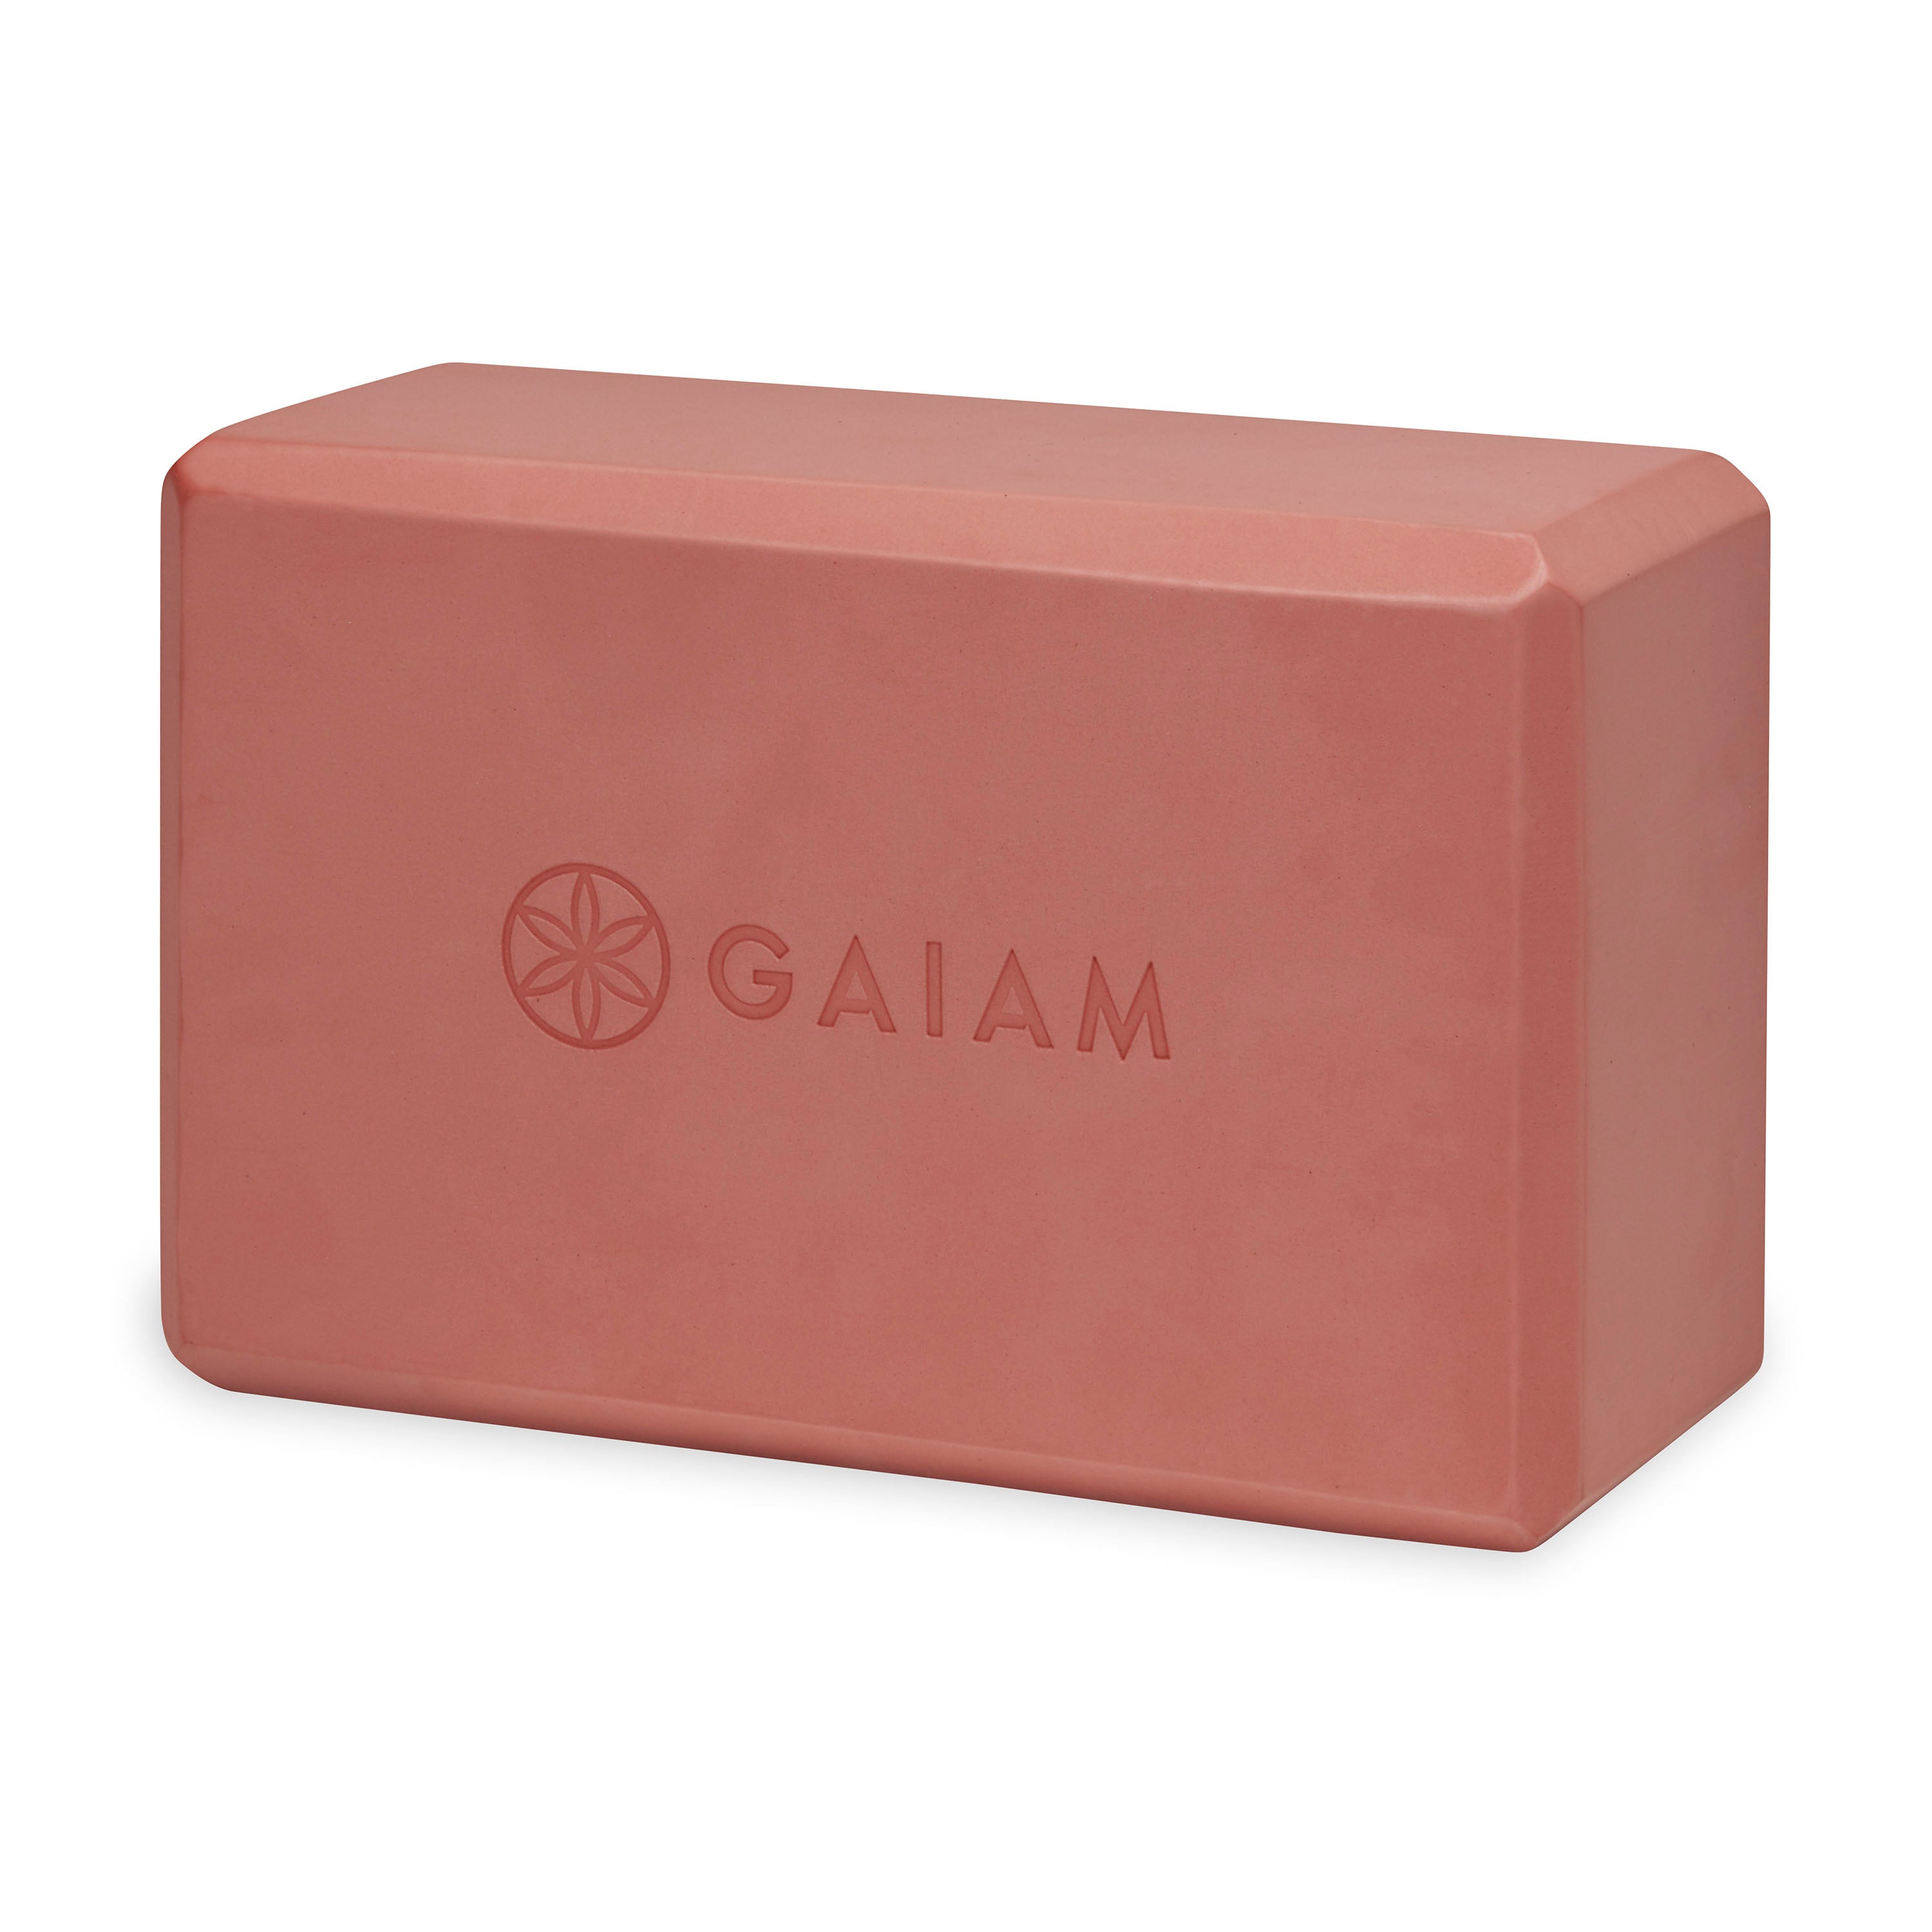 Gaiam Sol Natural Cork Yoga Block